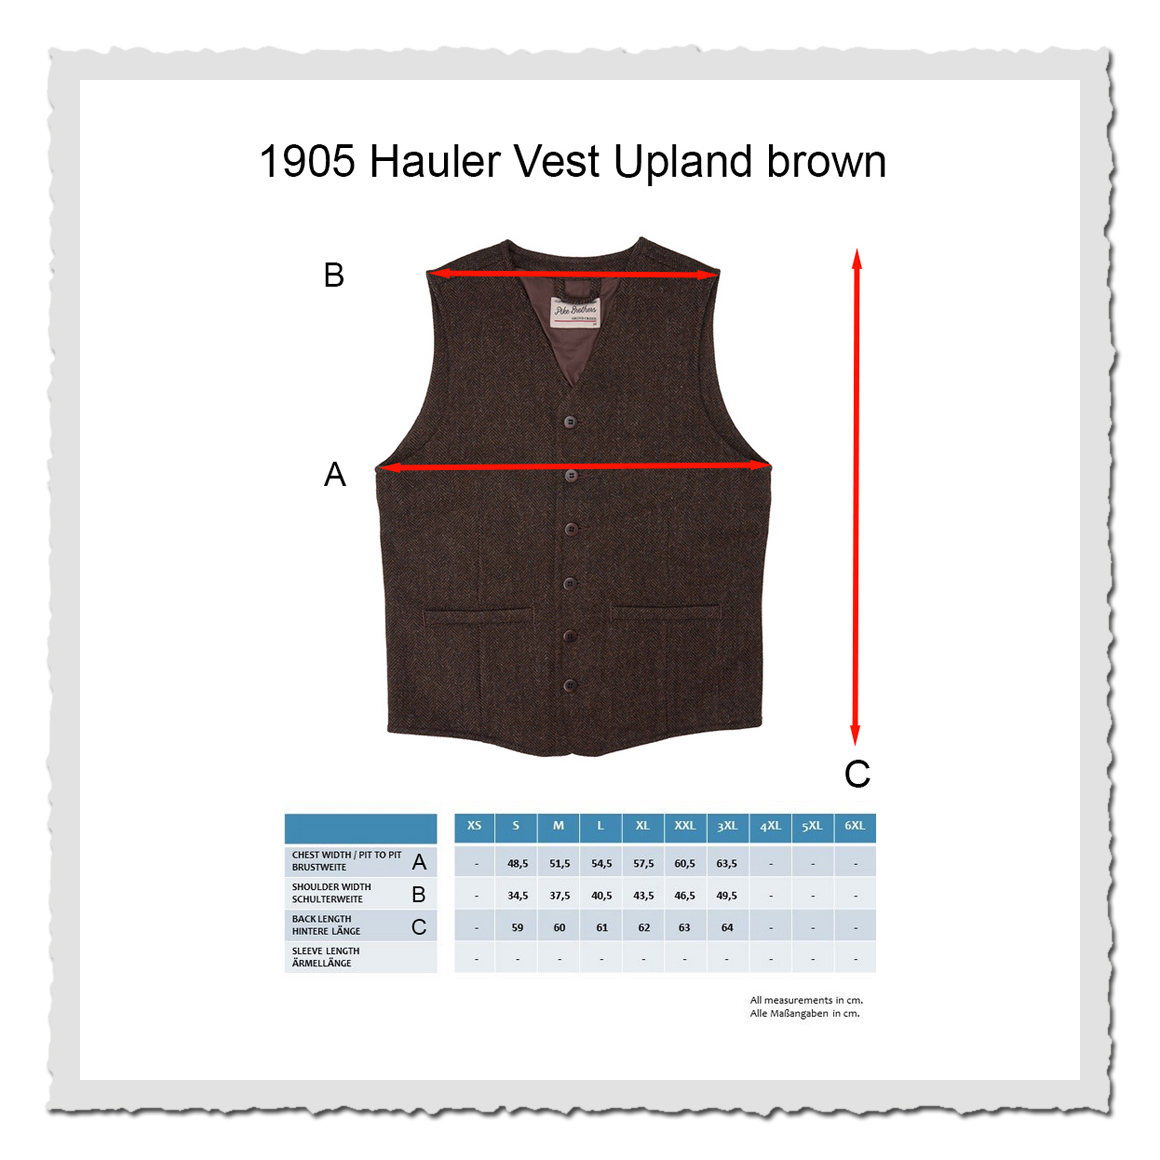 1905 Hauler Vest Upland brown